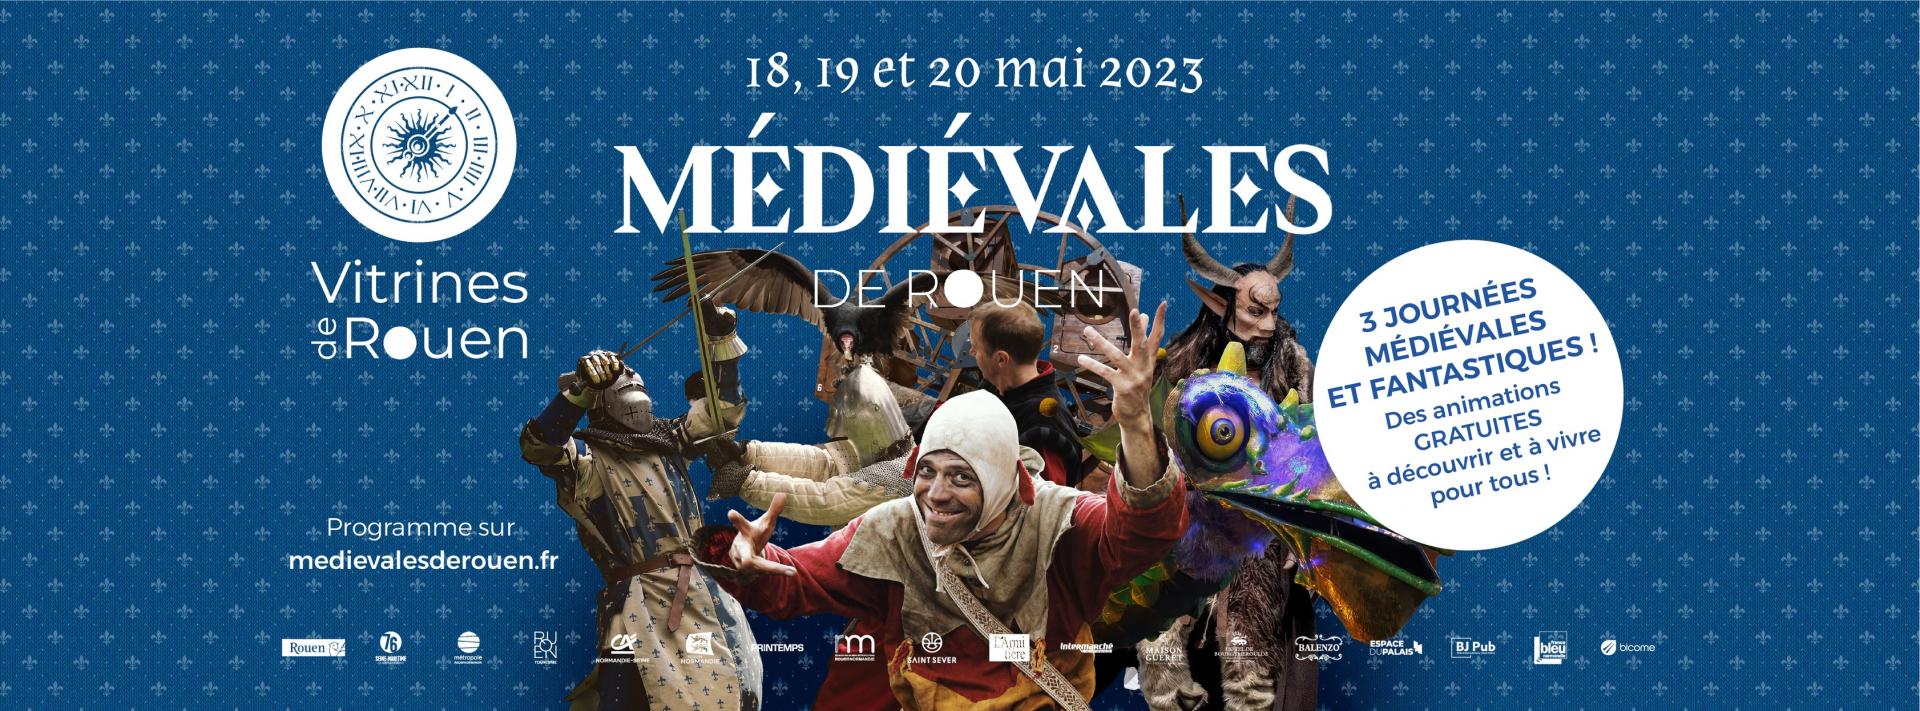 Les médiévales de Rouen du 18 au 20 mai 2023